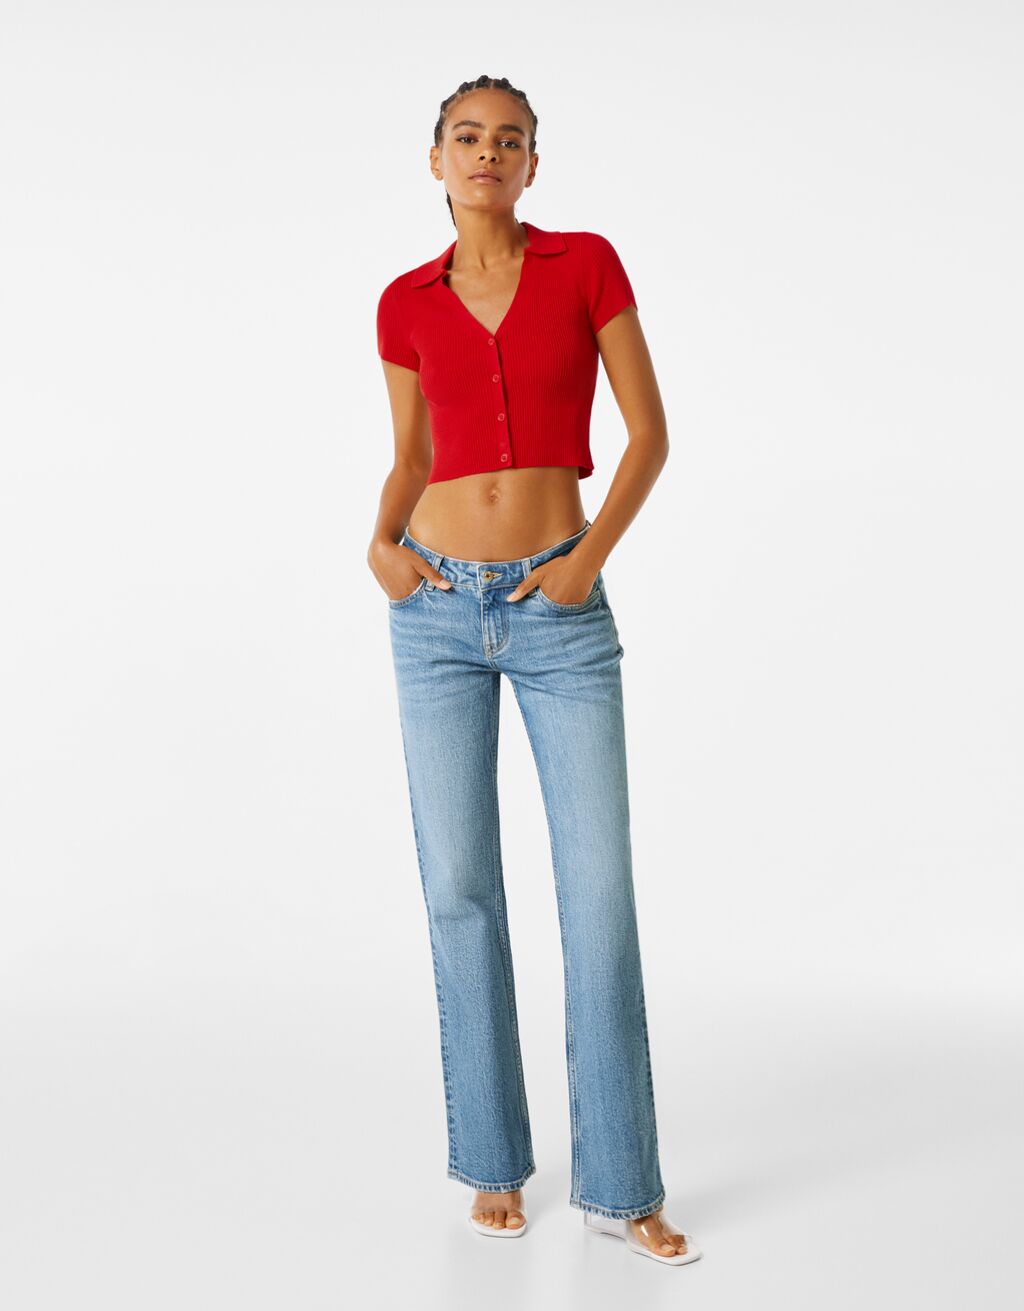 ג'ינס low rise מתרחבים בגזרת comfort fit